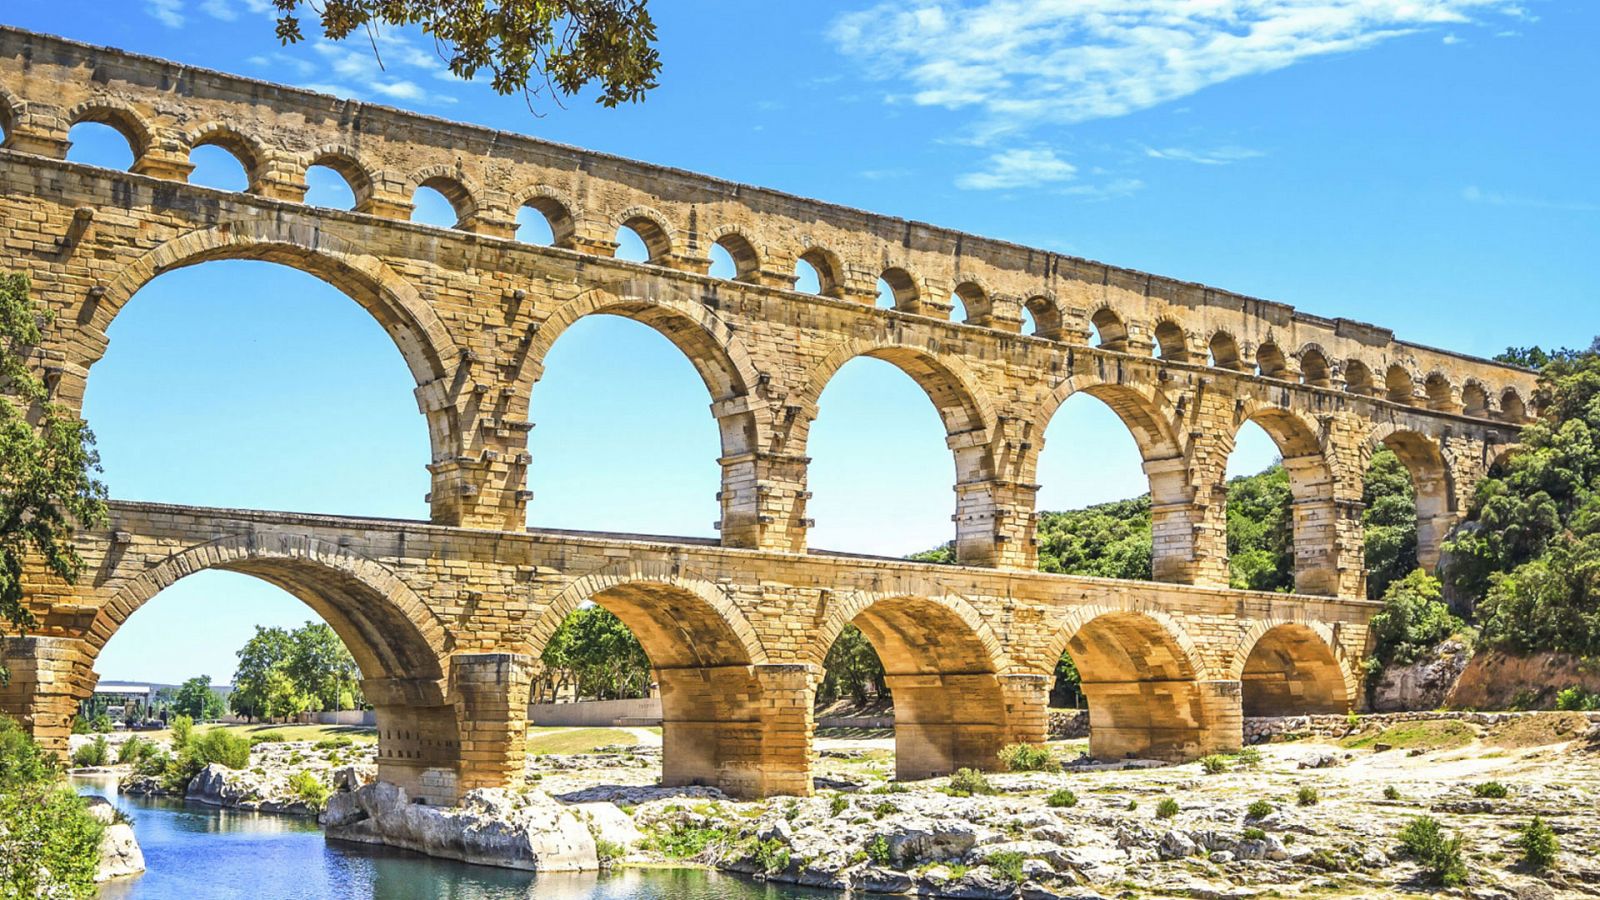 Ingeniería romana - Los acueductos I - ver ahora